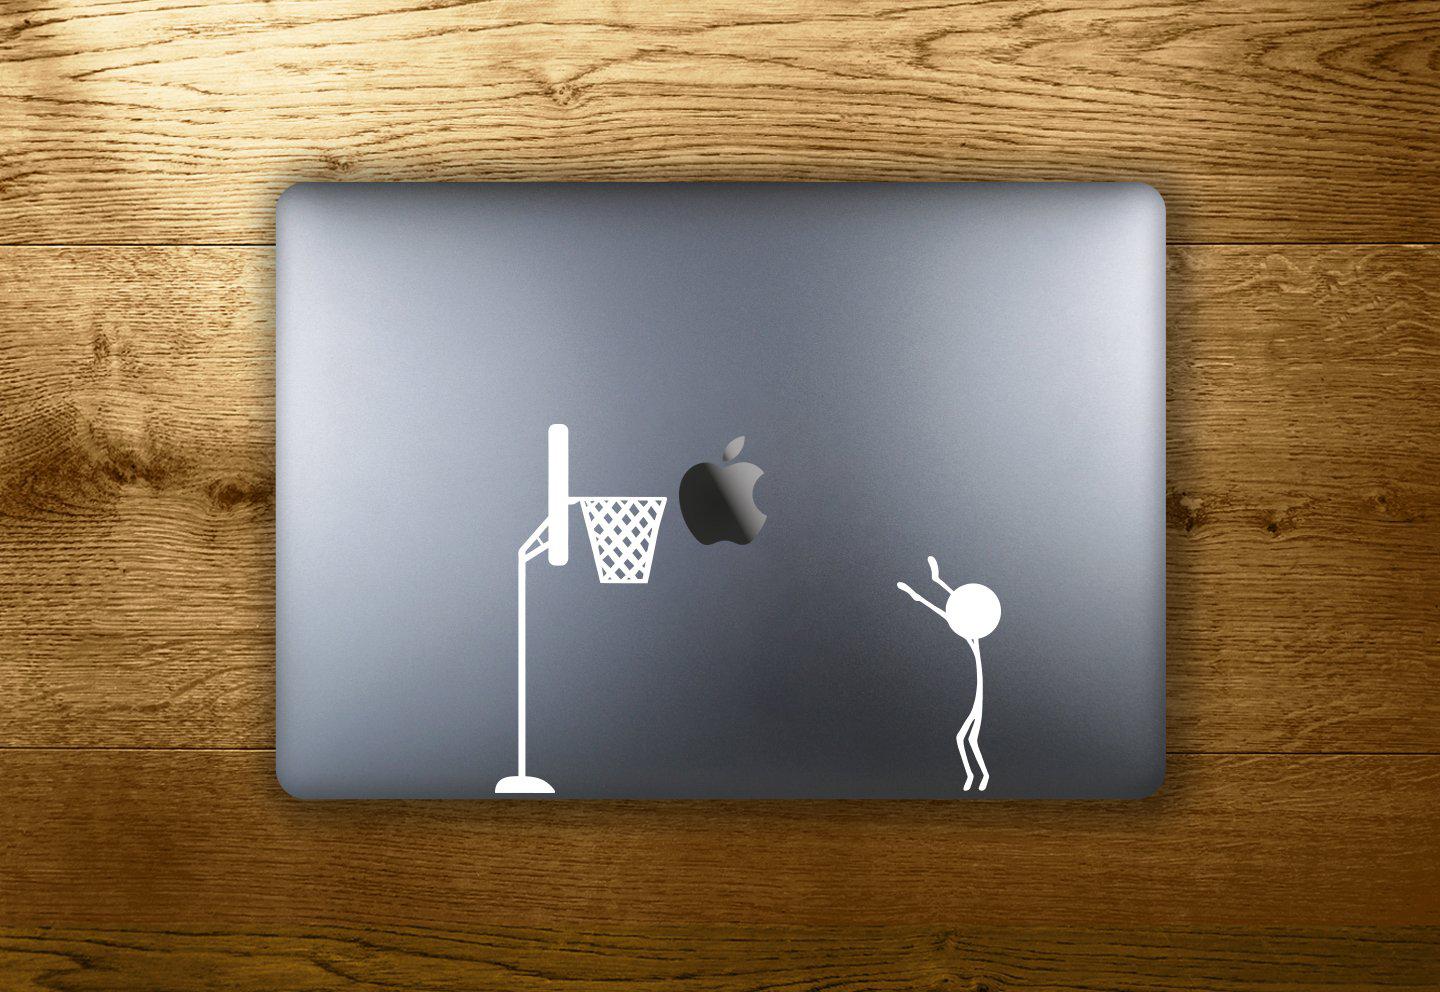 Basketball - make it stick